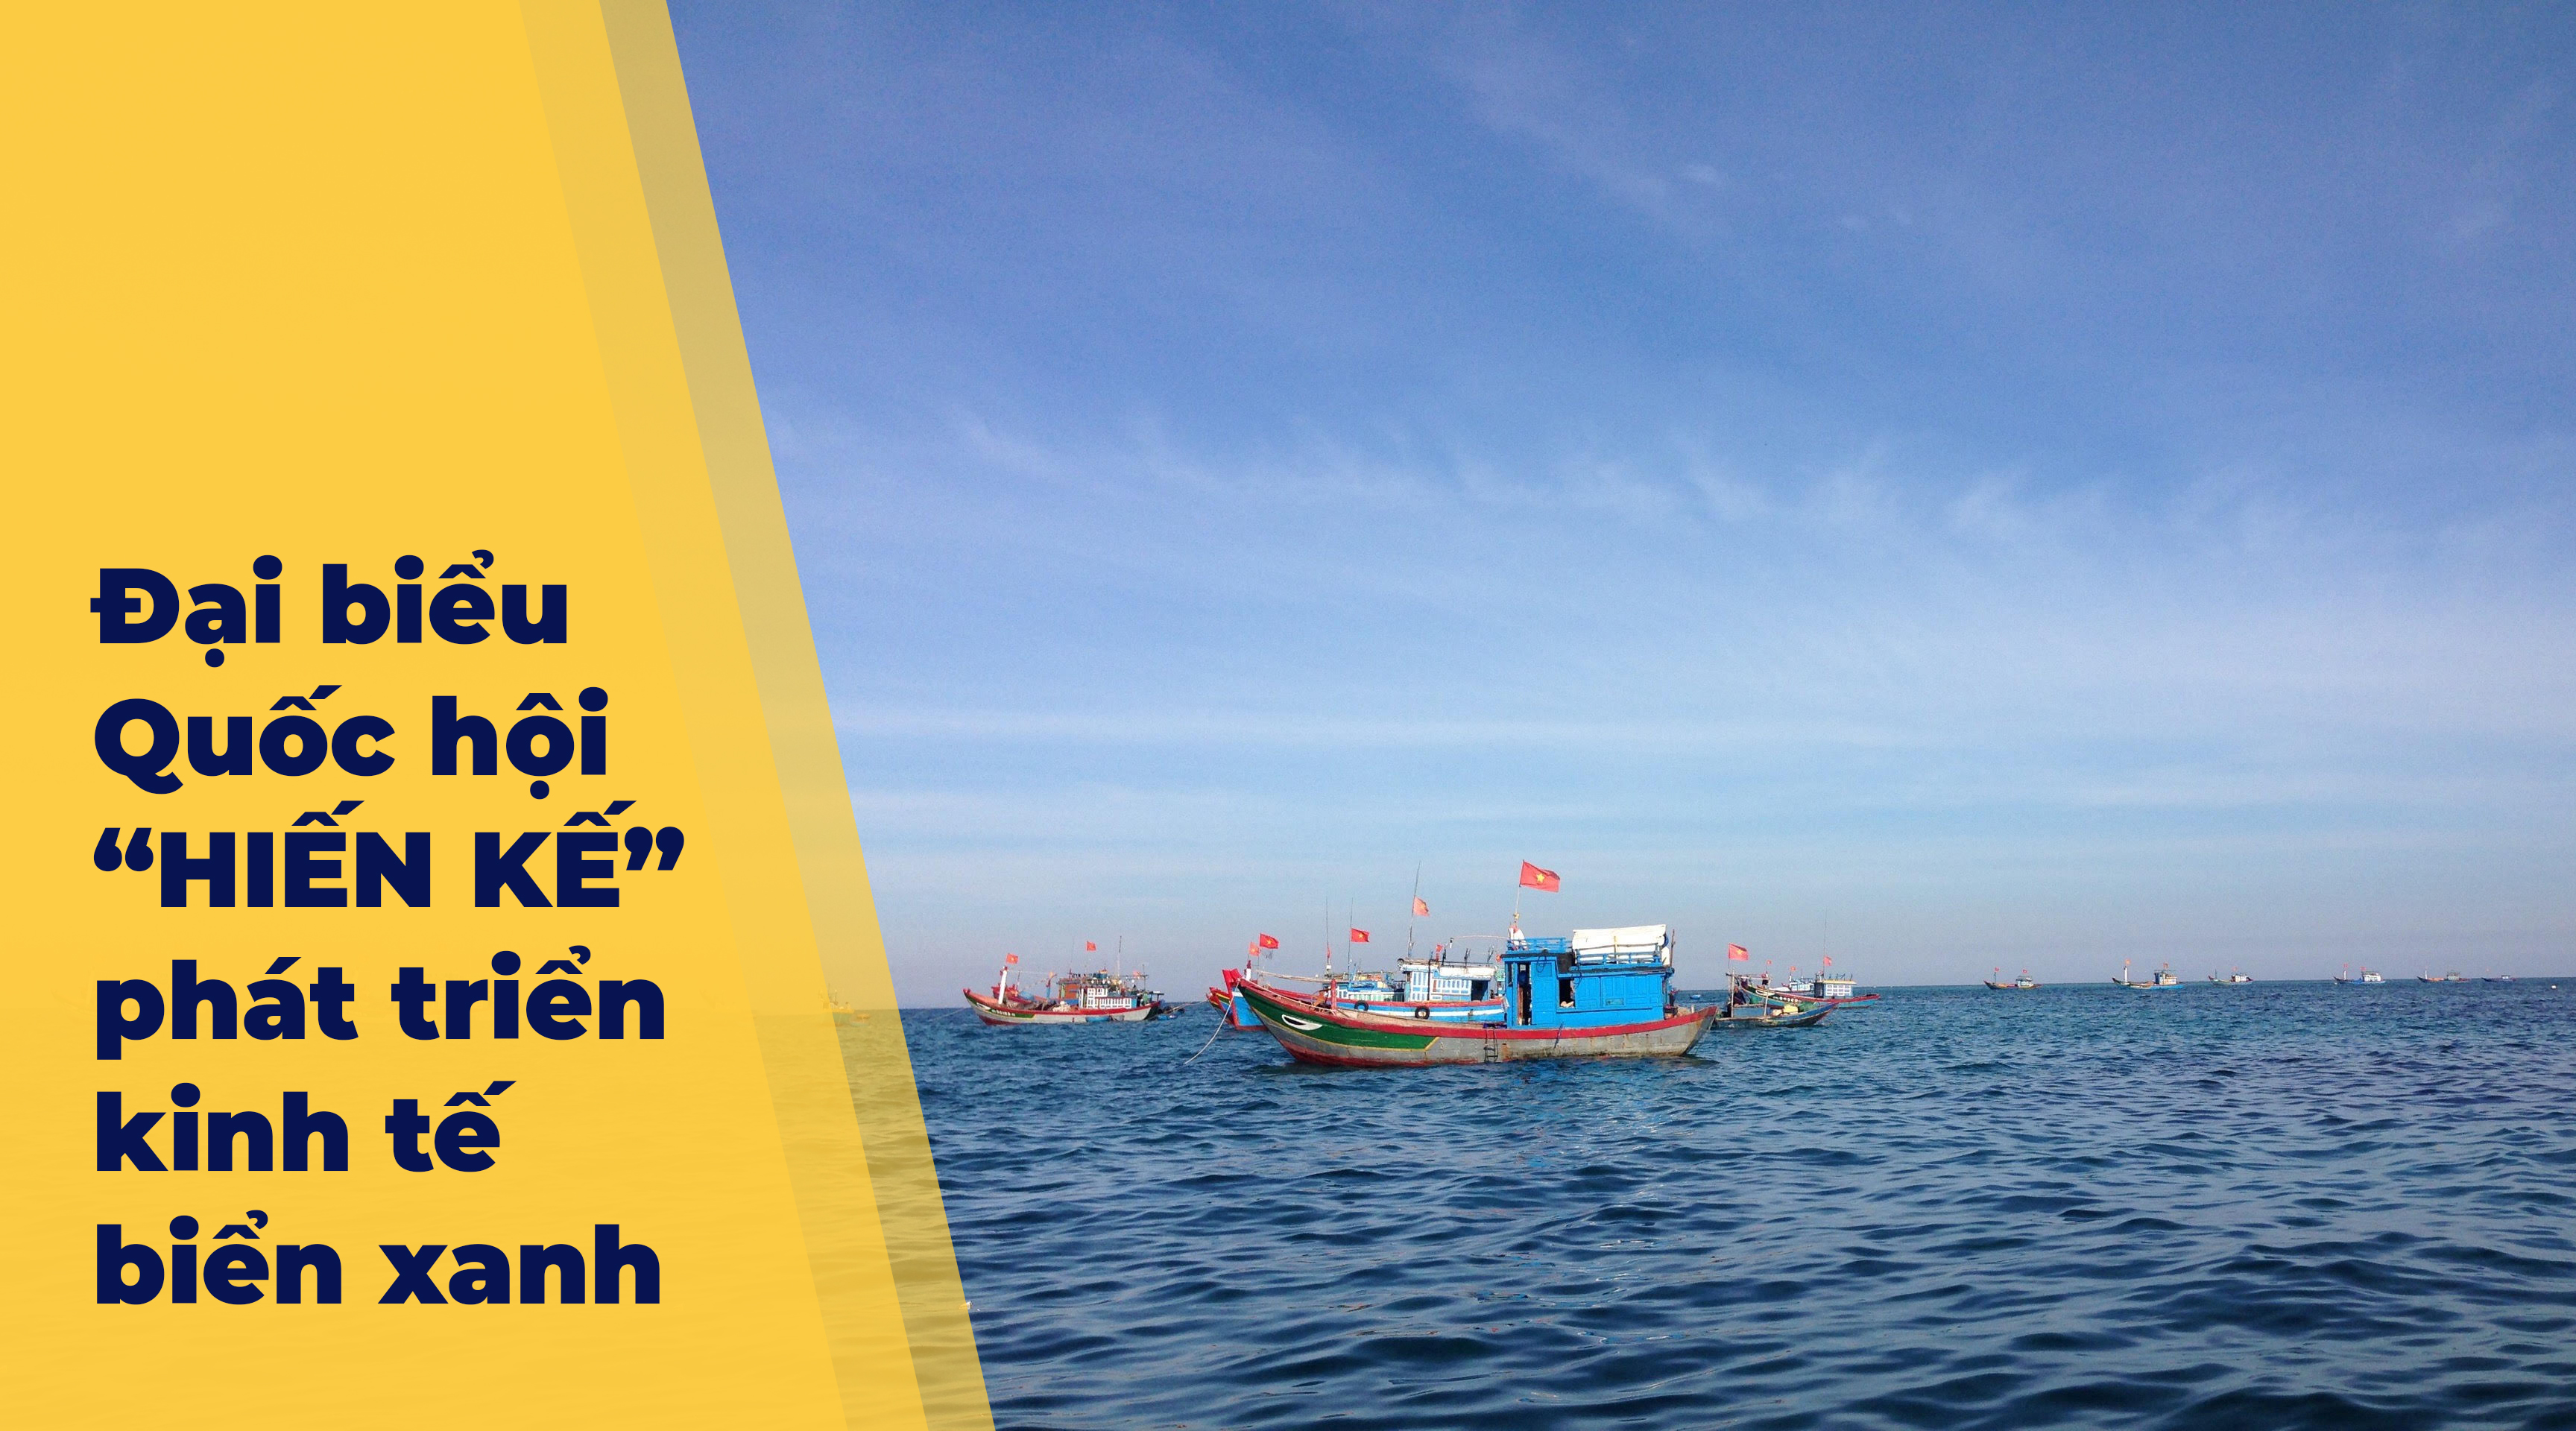 Kinh tế biển: Kinh tế biển của Việt Nam đang ngày càng phát triển mạnh mẽ. Những lĩnh vực liên quan đến khai thác tài nguyên biển, du lịch biển, thủy sản và vận tải biển đang được đầu tư và phát triển để tăng cường đóng góp vào ngân sách quốc gia. Hãy xem hình ảnh liên quan đến từ khóa \